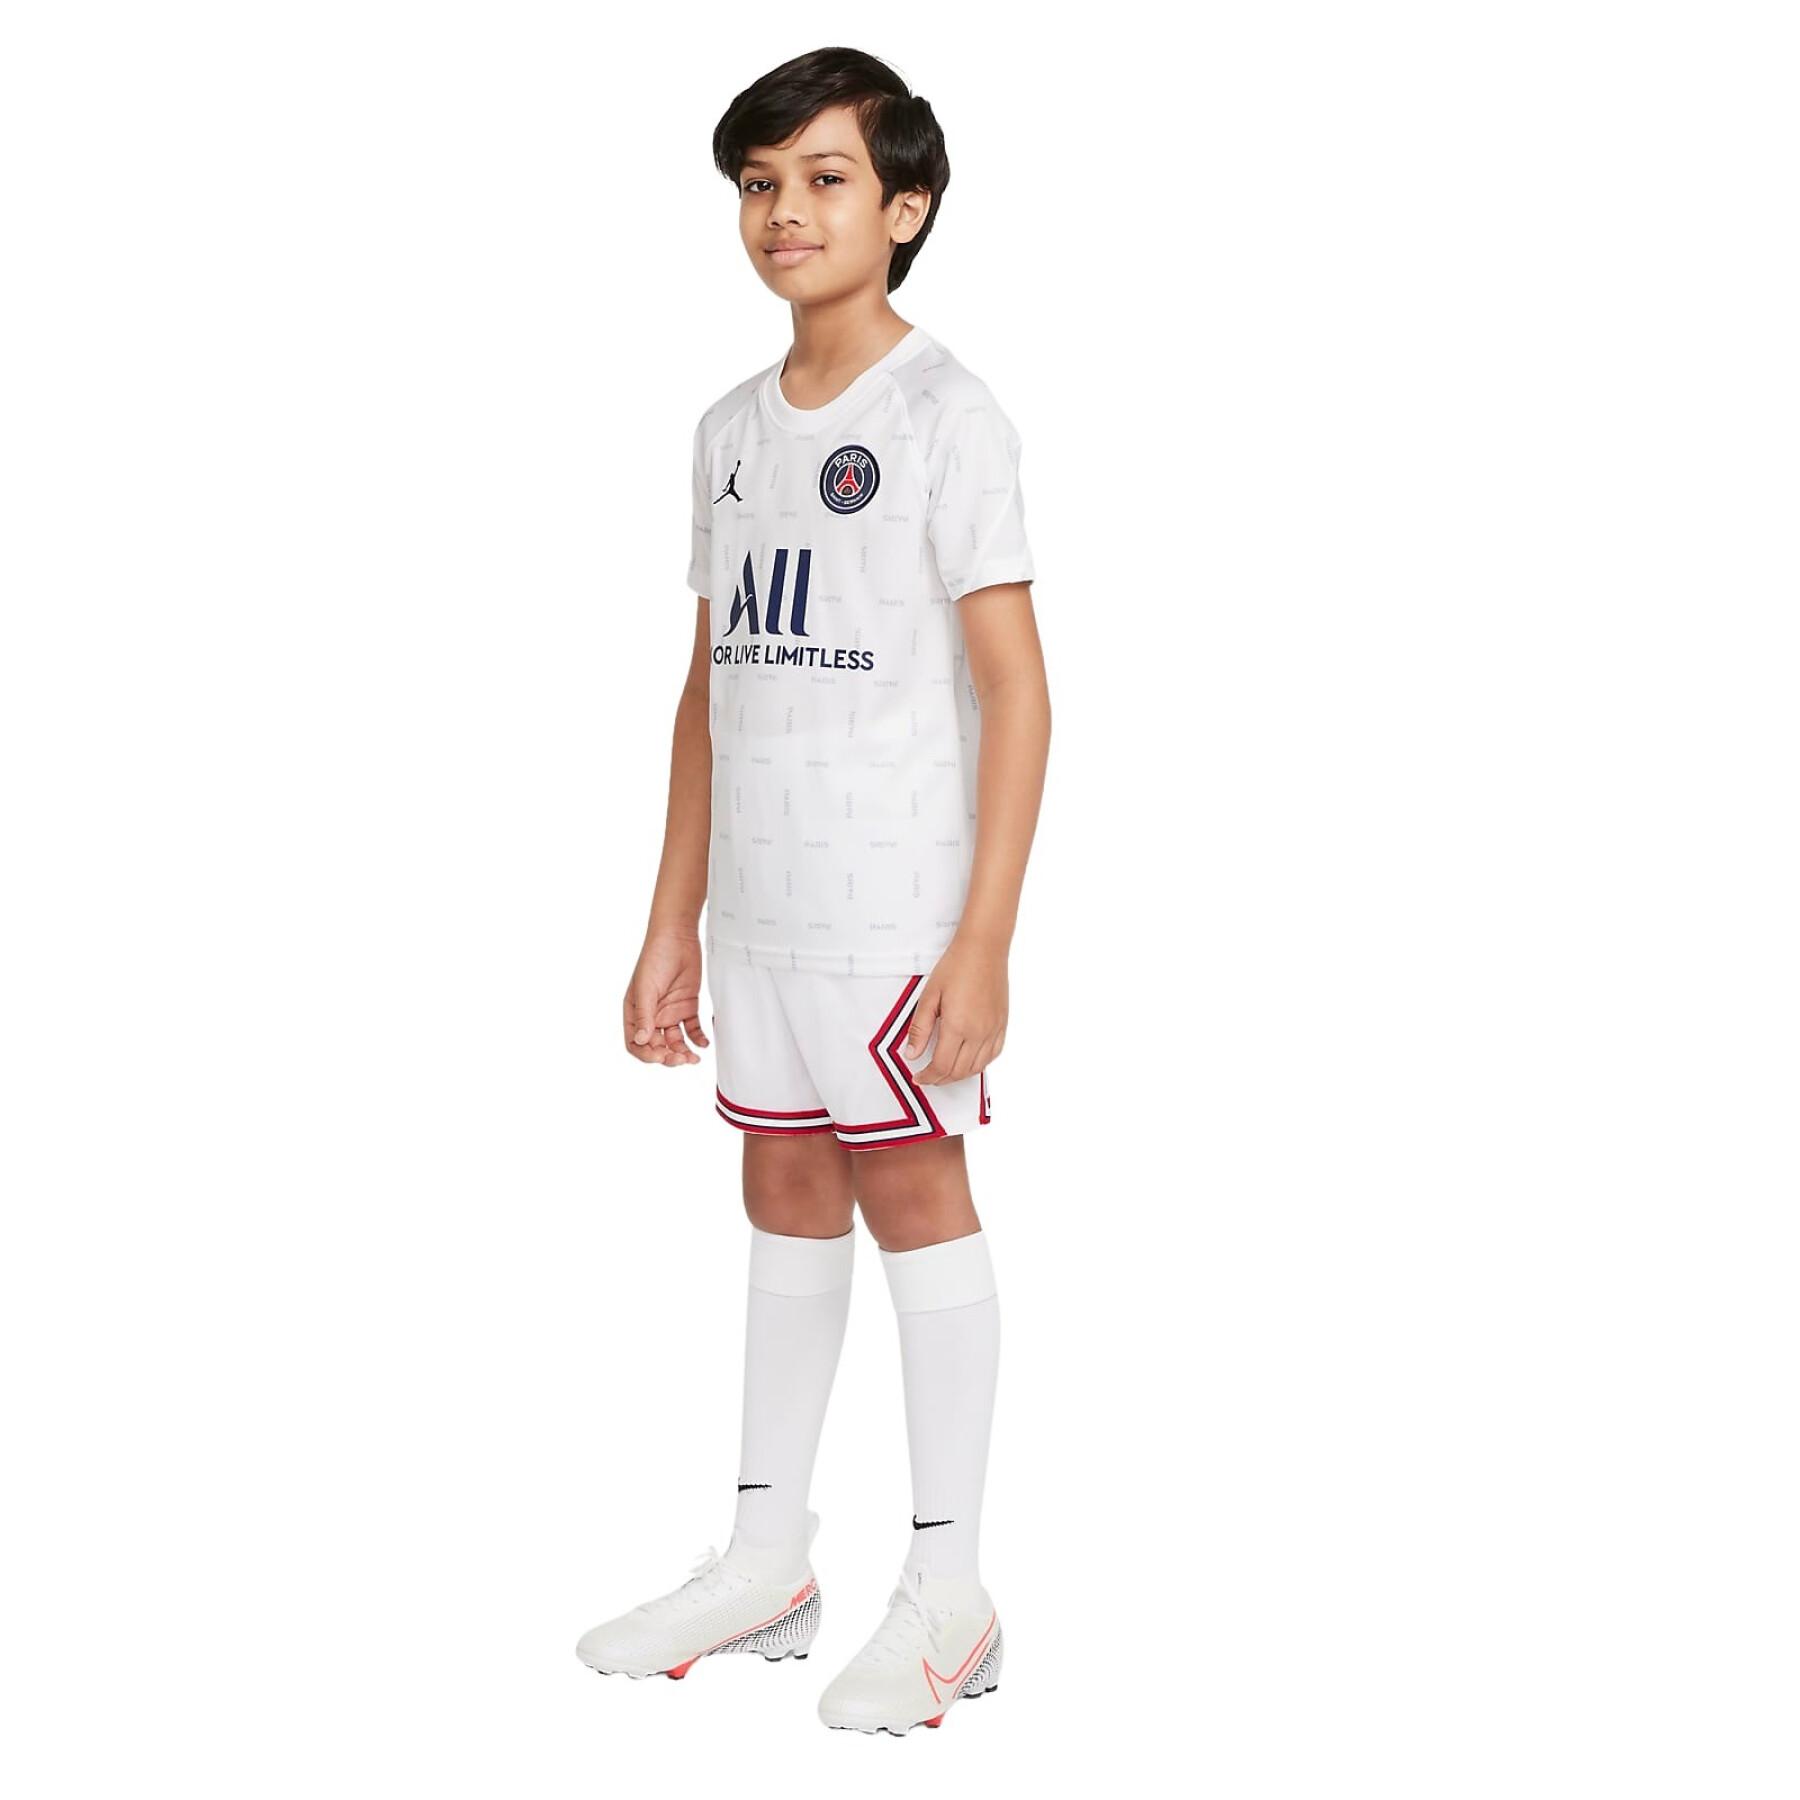 Children's shorts fourth PSG 2021/22